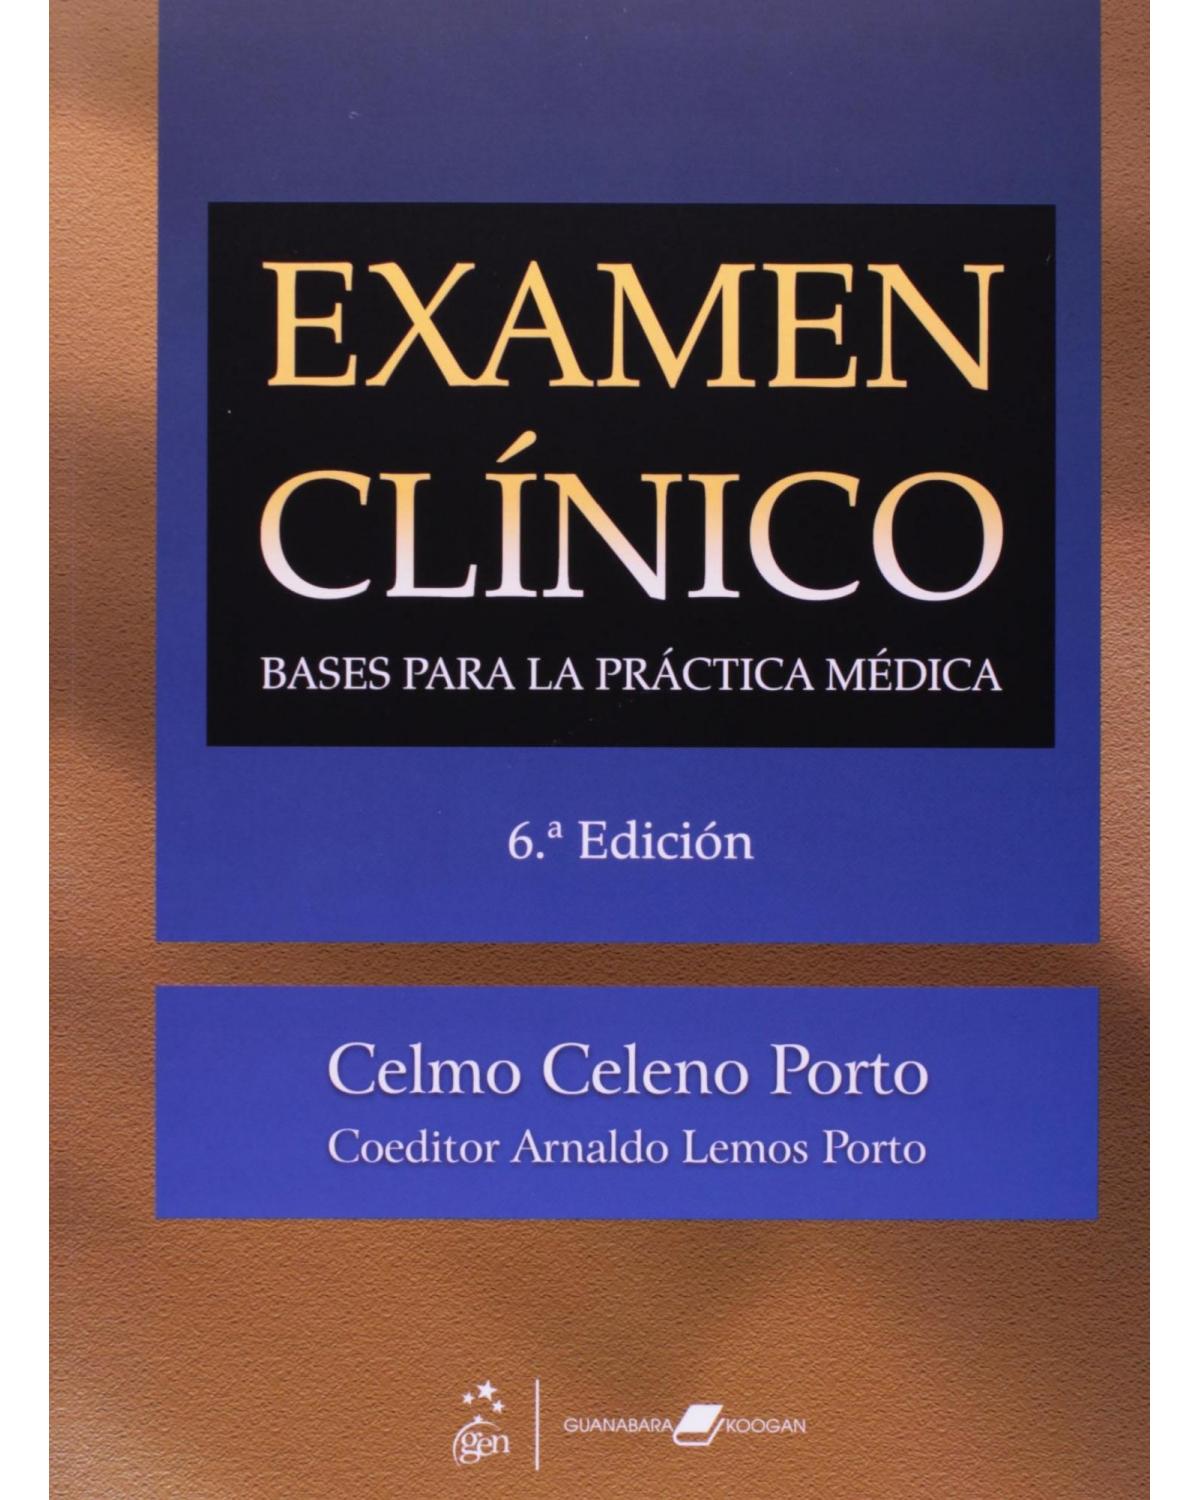 Examen clínico - bases para la práctica médica - 6ª Edição | 2009